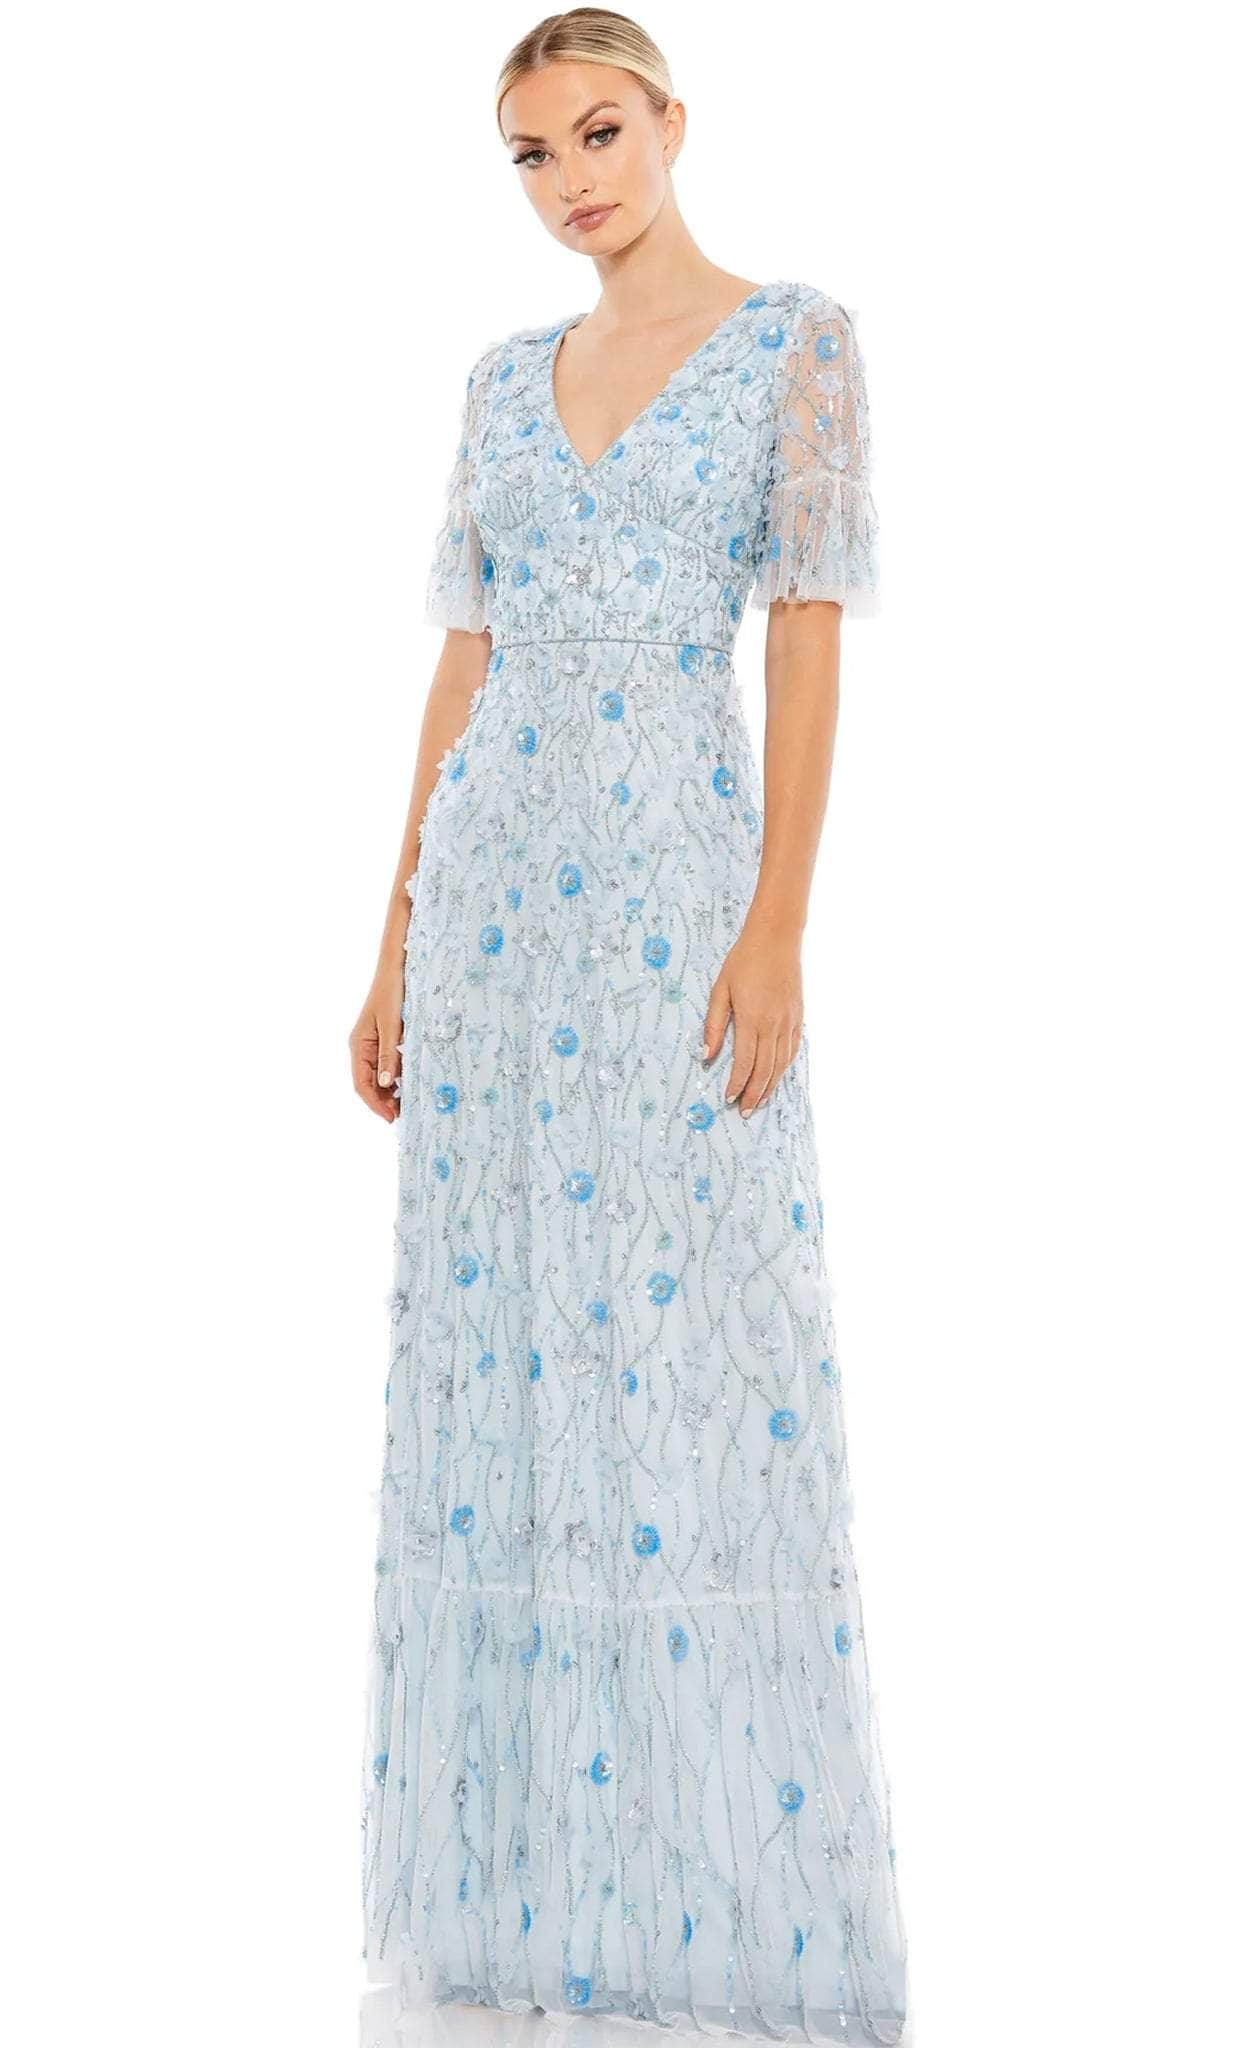 Image of Mac Duggal 35110 - Short Sleeve Floral Embellished Dress